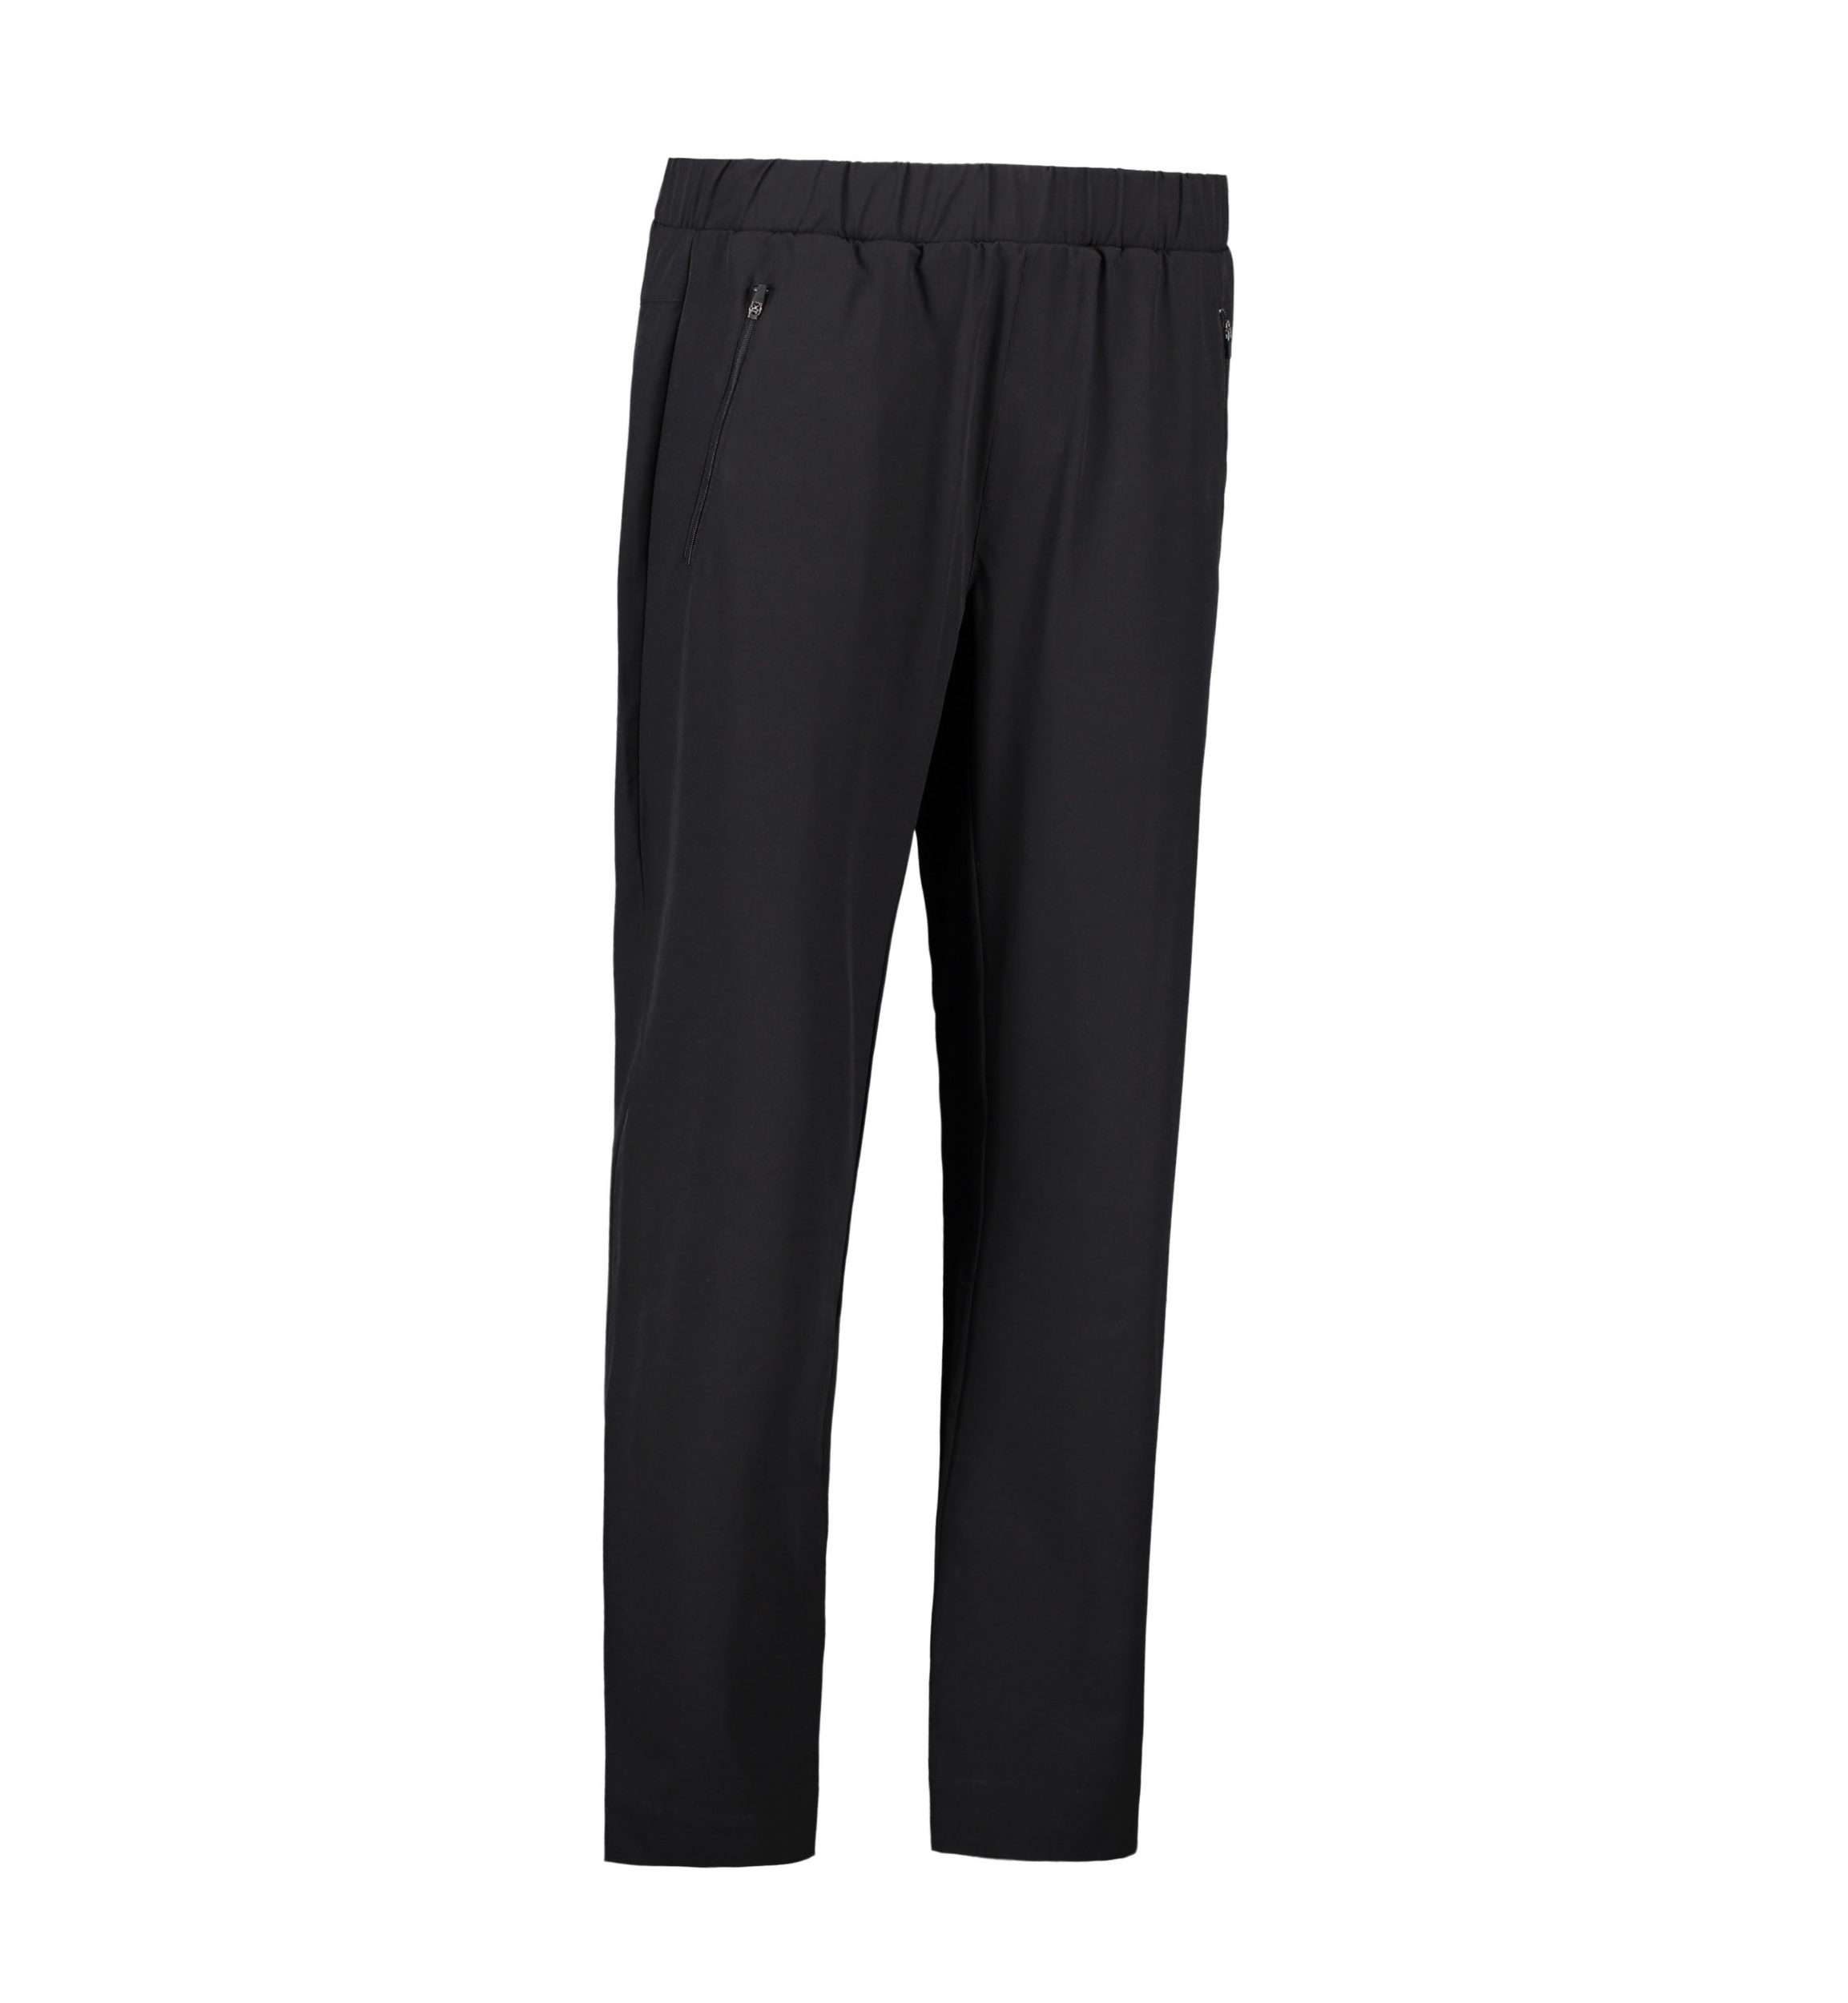 Billede af Stretch bukser til mænd i sort - XS hos Sygeplejebutikken.dk